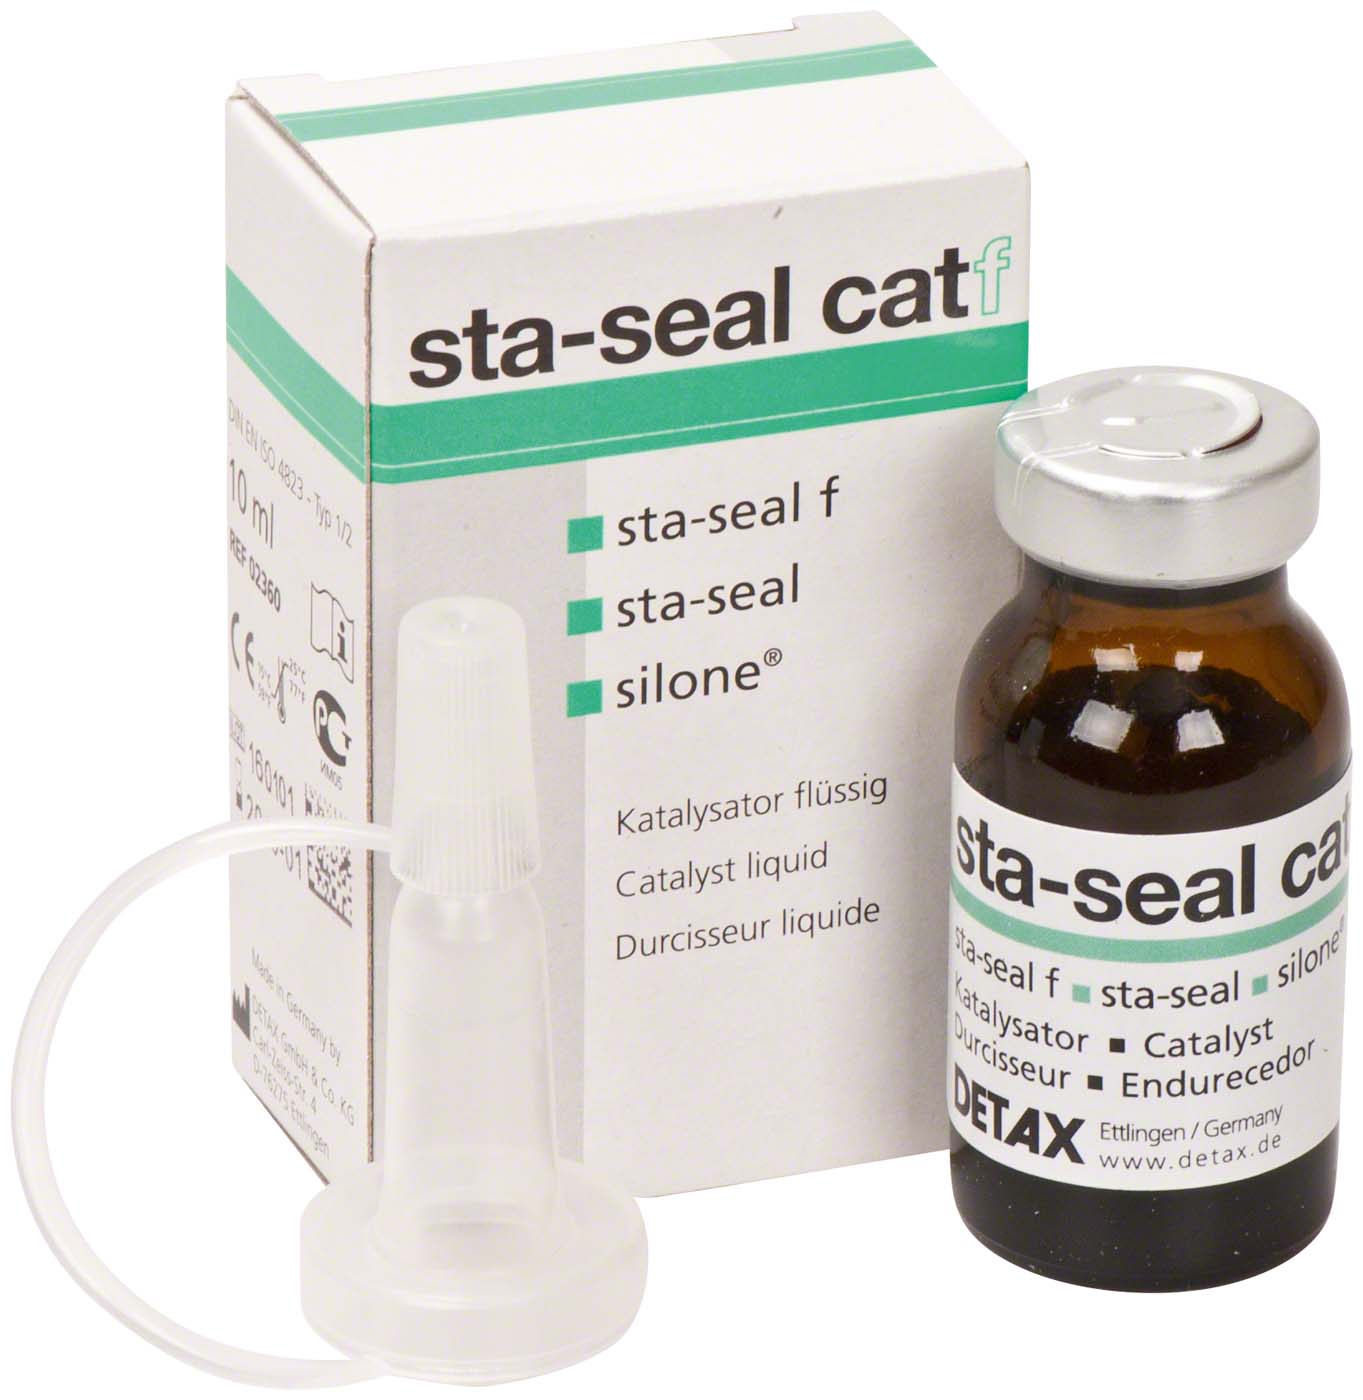 sta-seal catf DETAX